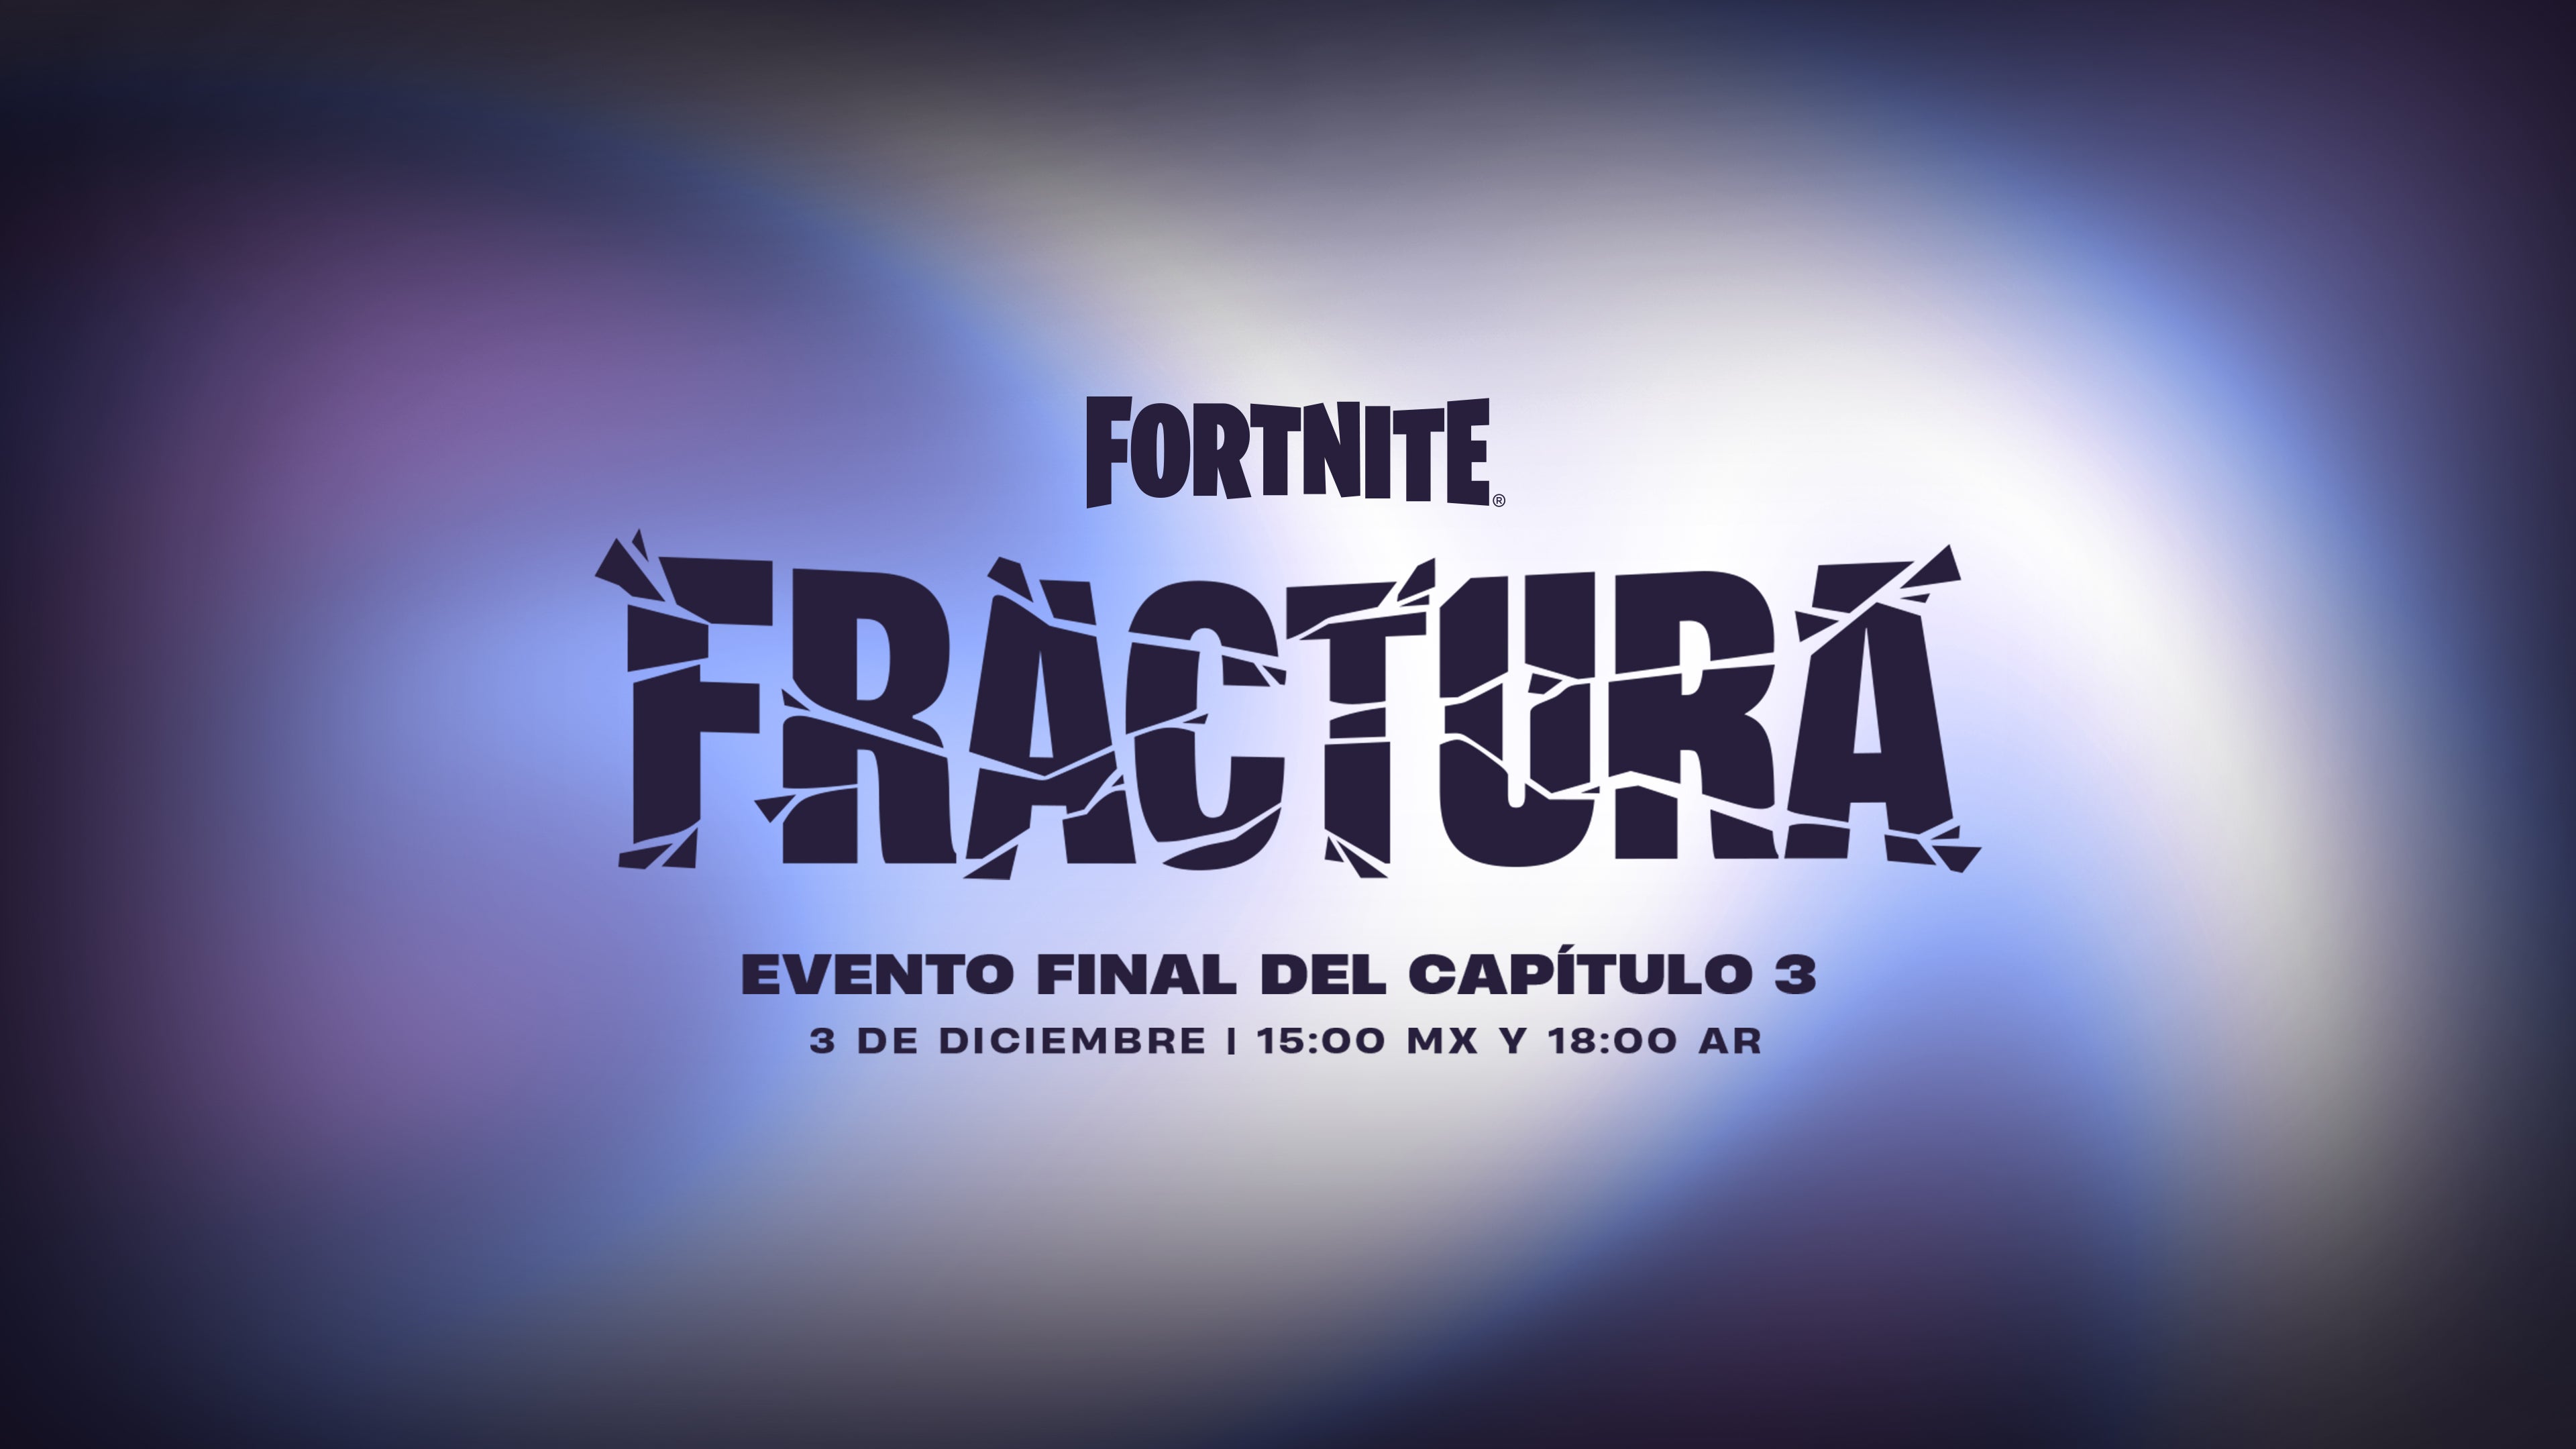 Imagen para Fortnite se prepara para el cierre del Capítulo 3 con el evento Fractura